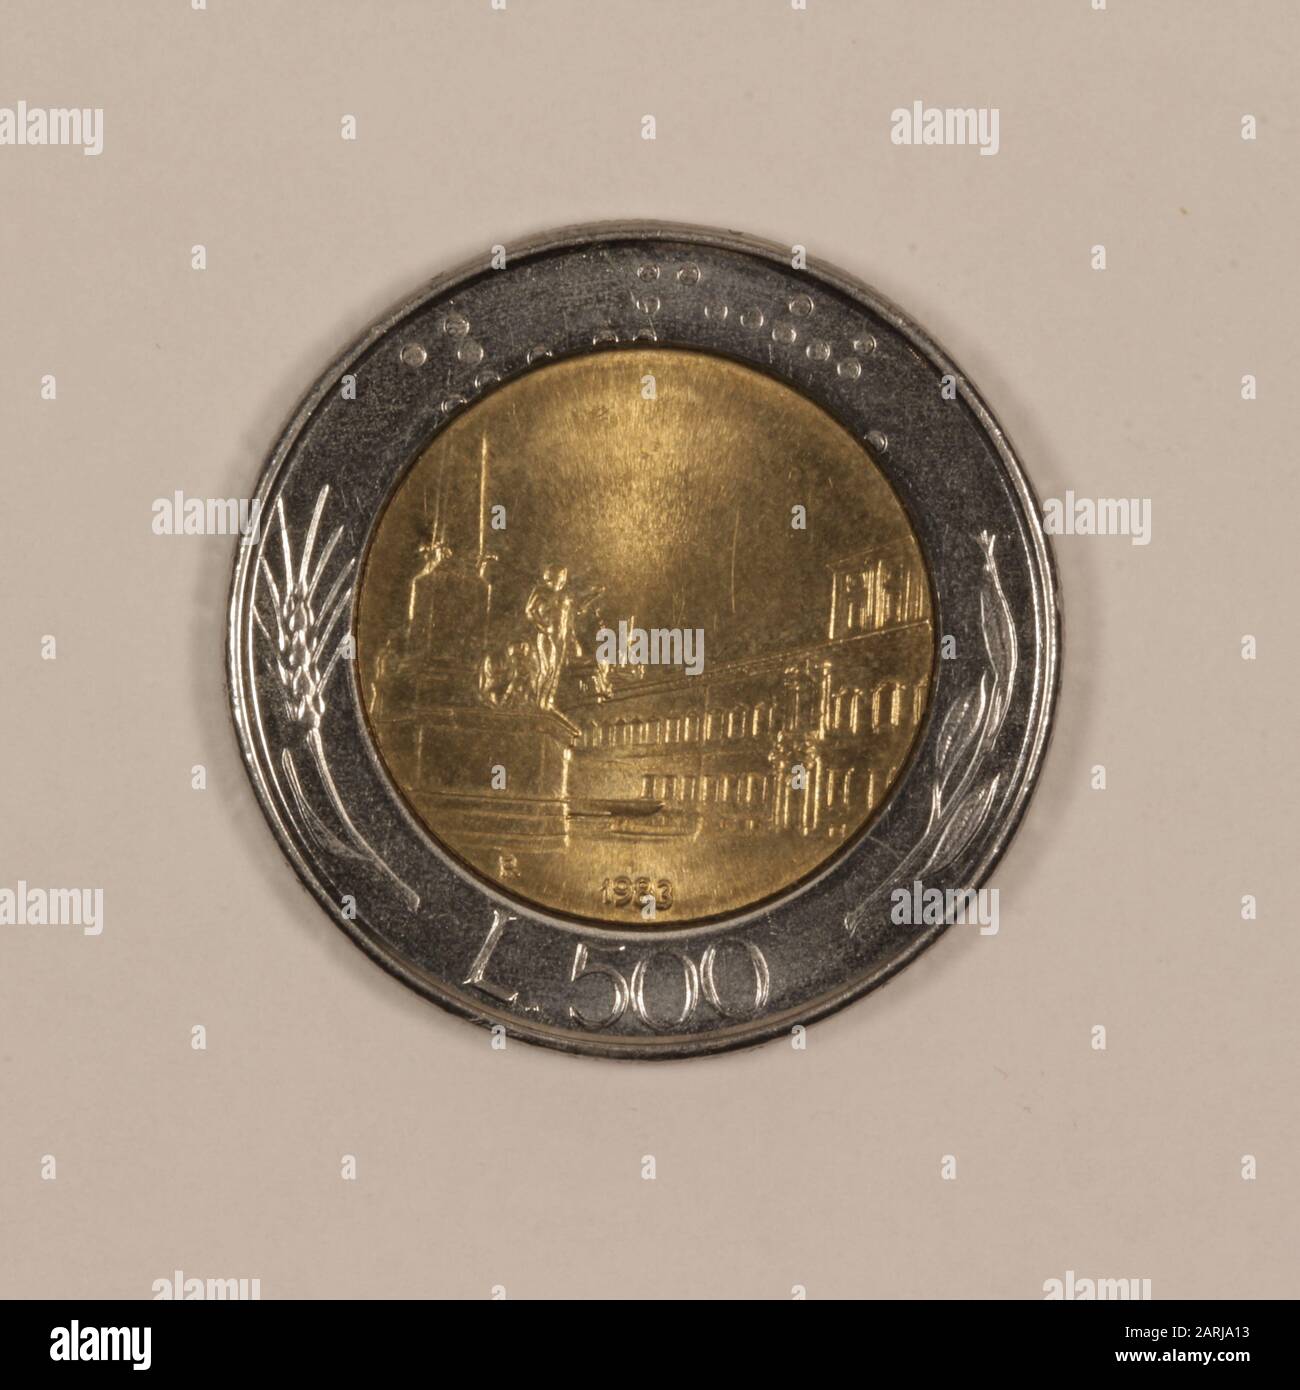 Vorderseite einer ehemaliguen Italienischen 500 Lire Münze Foto Stock